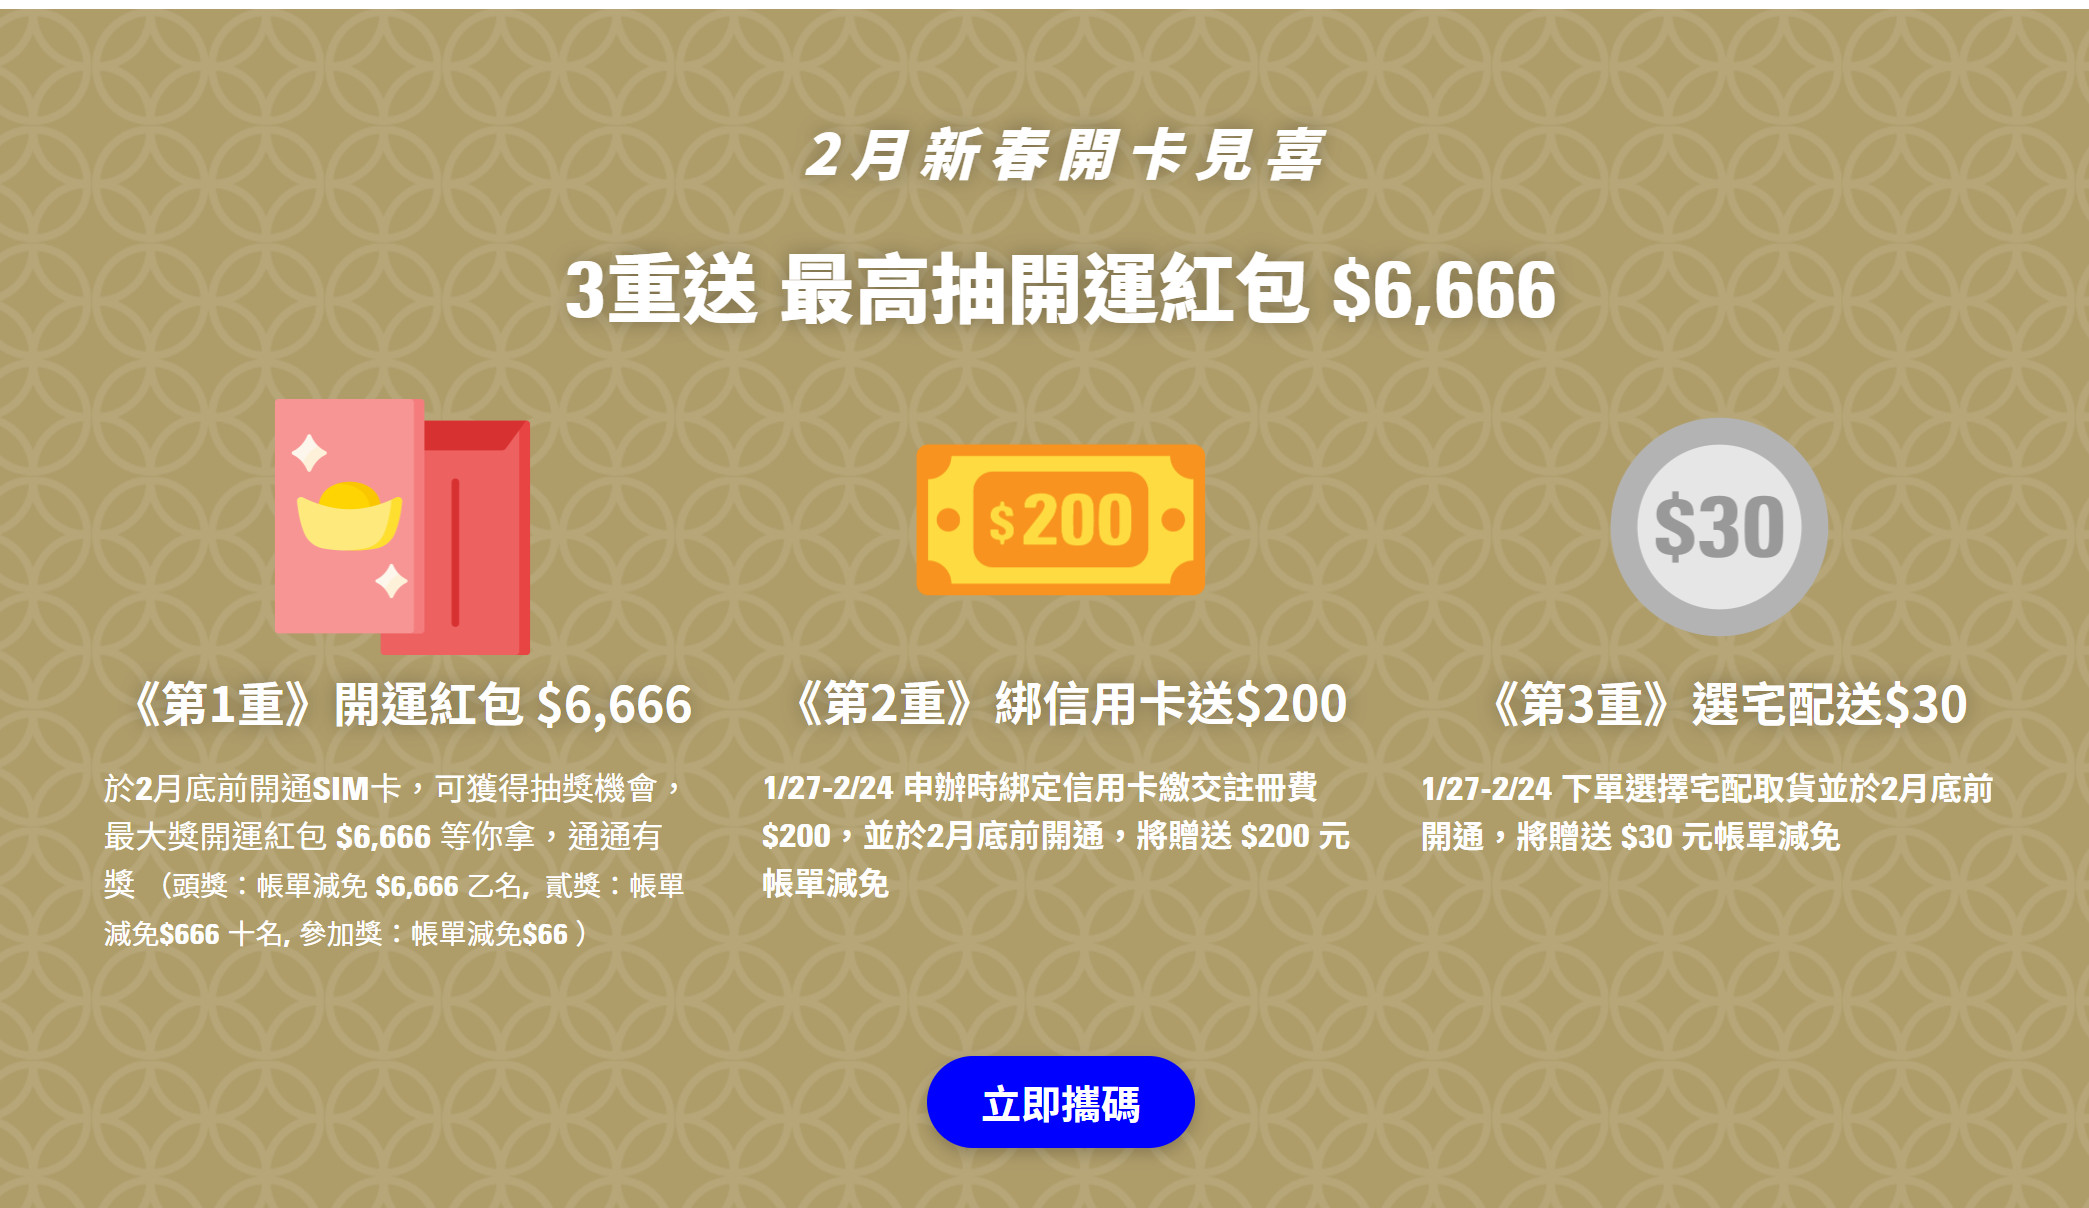 【無框行動】新春專案，中華電信大4G網路吃到飽466元，低流量只要166元!超適合搭配台灣之星雙11專案。 - 中華電信最低月租 - 敗家達人推薦